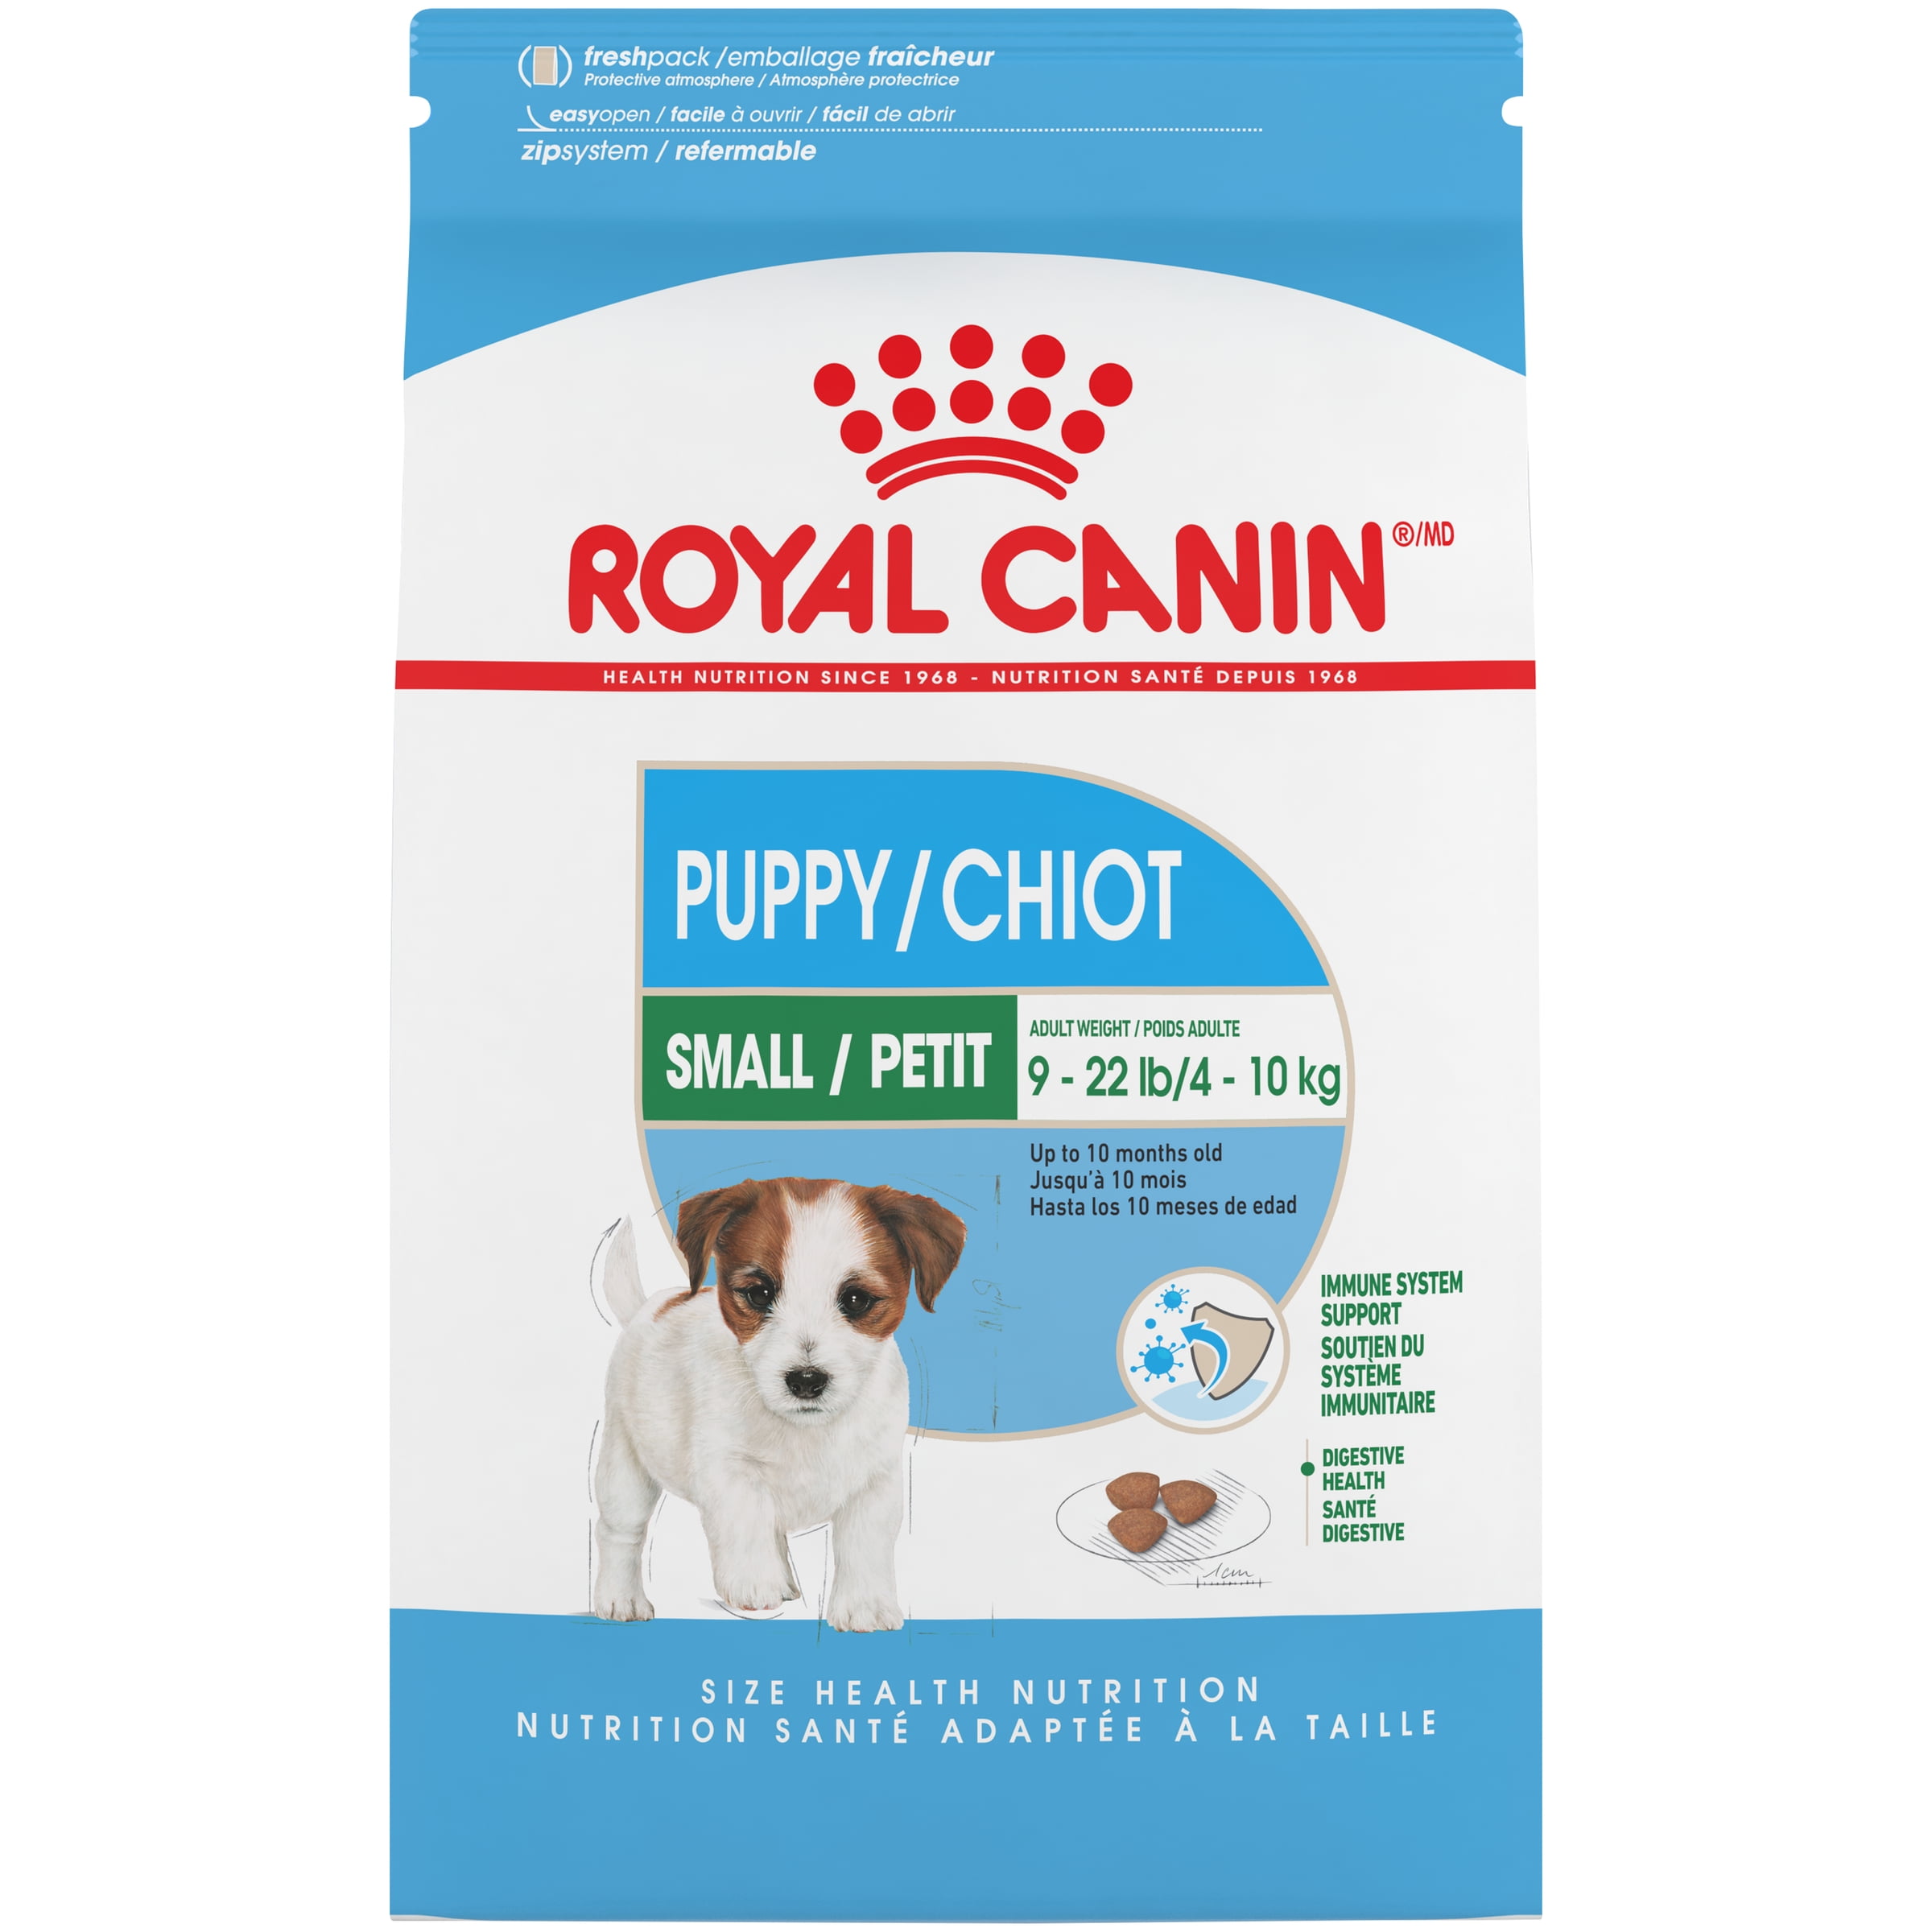 royal canin chow chow